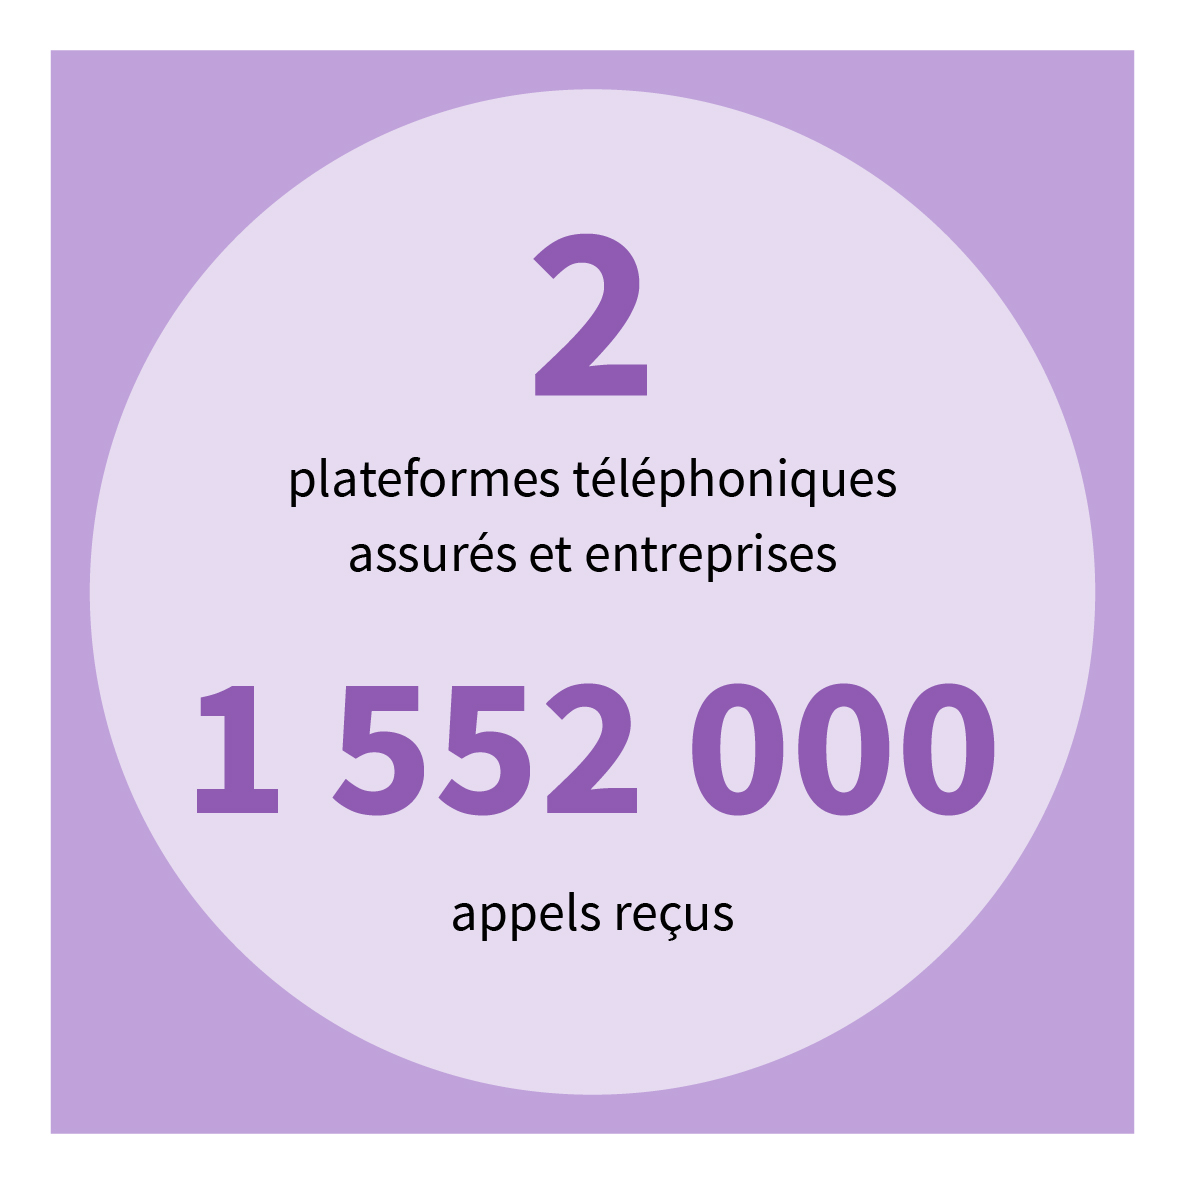 2 plateformes téléphoniques - Assurés et entreprises - 1 552 000 appels reçus.